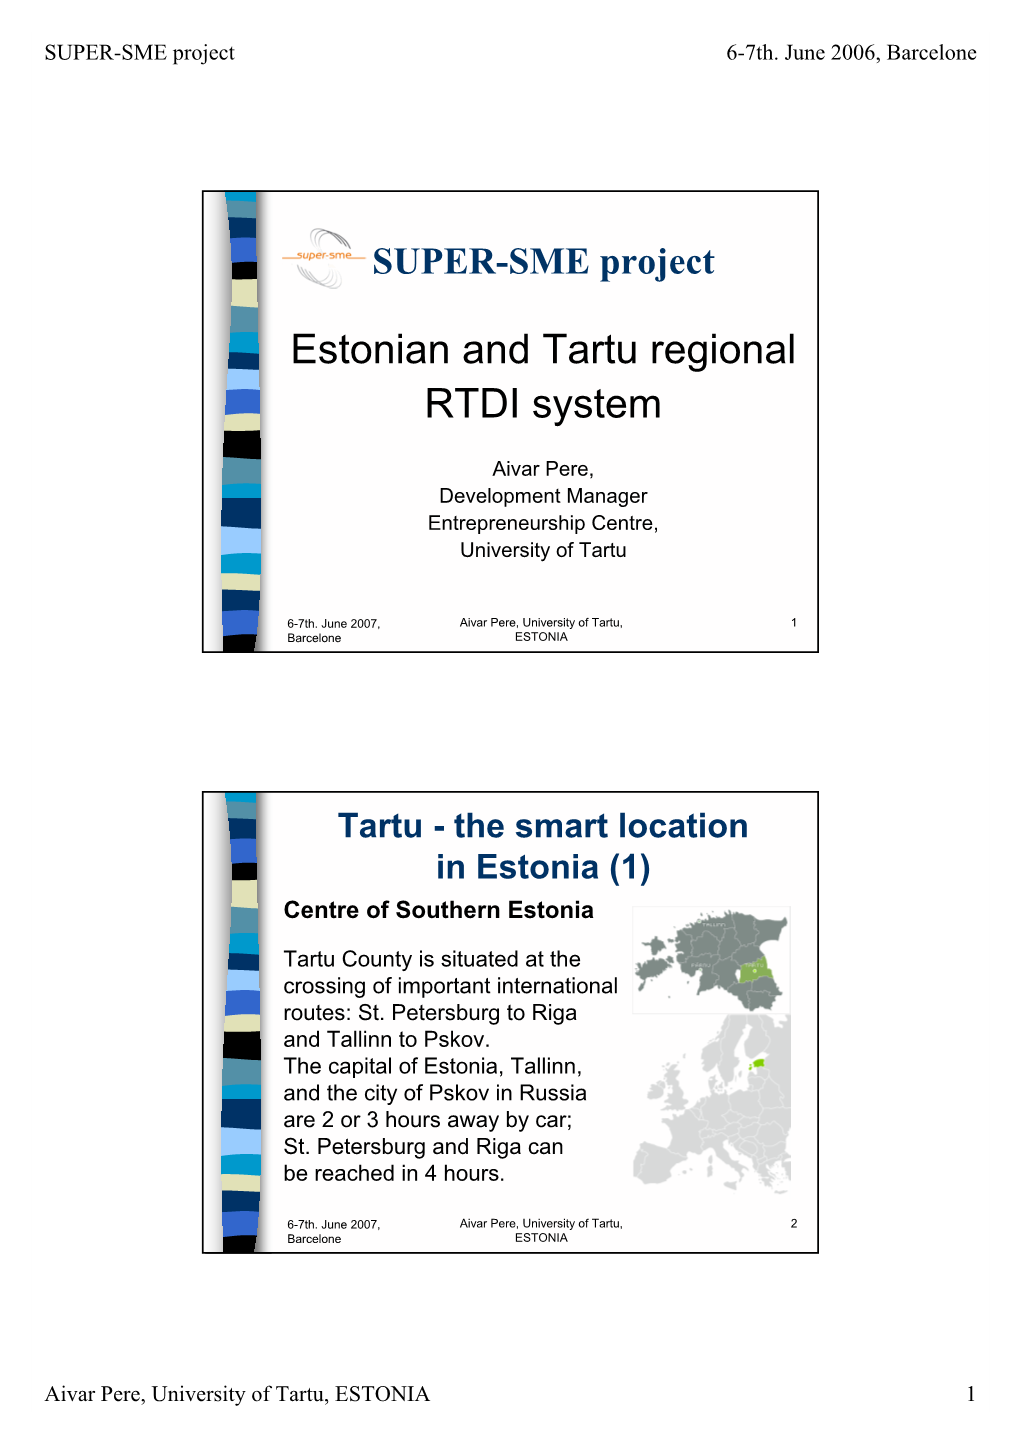 Estonian and Tartu Regional RTDI System